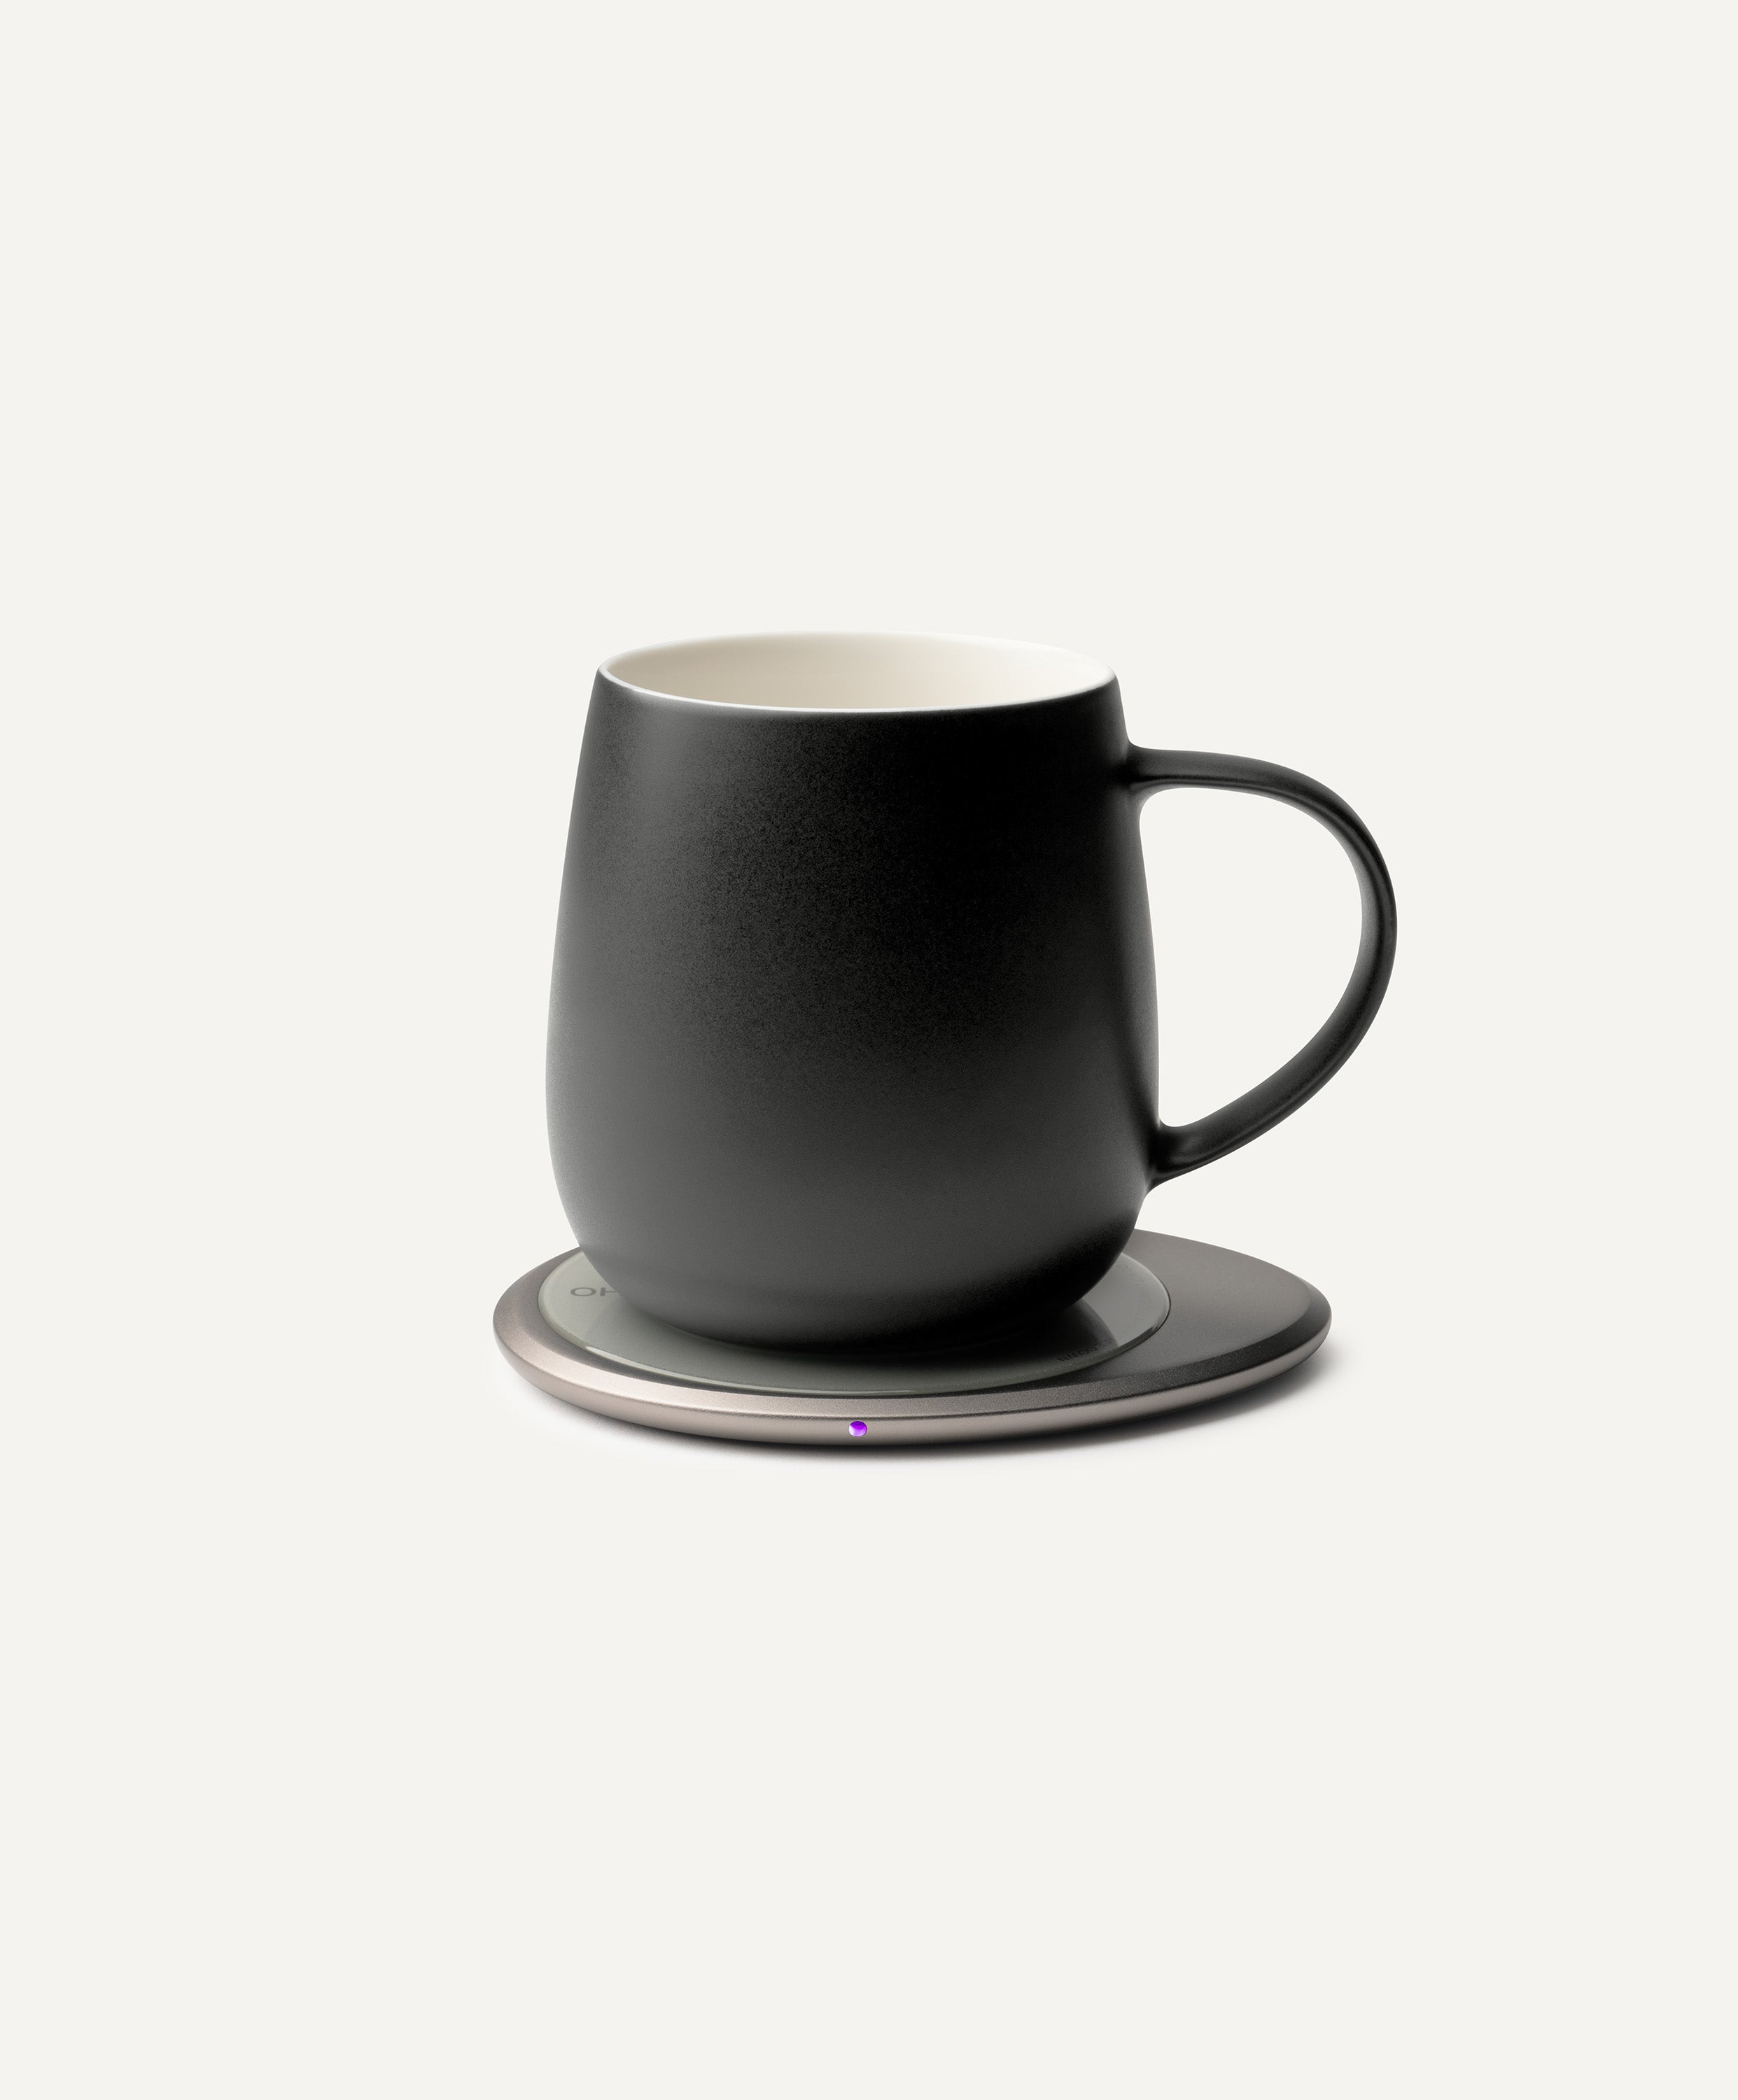 Ui 3 Self-heating Mug Set - Inkstone Black